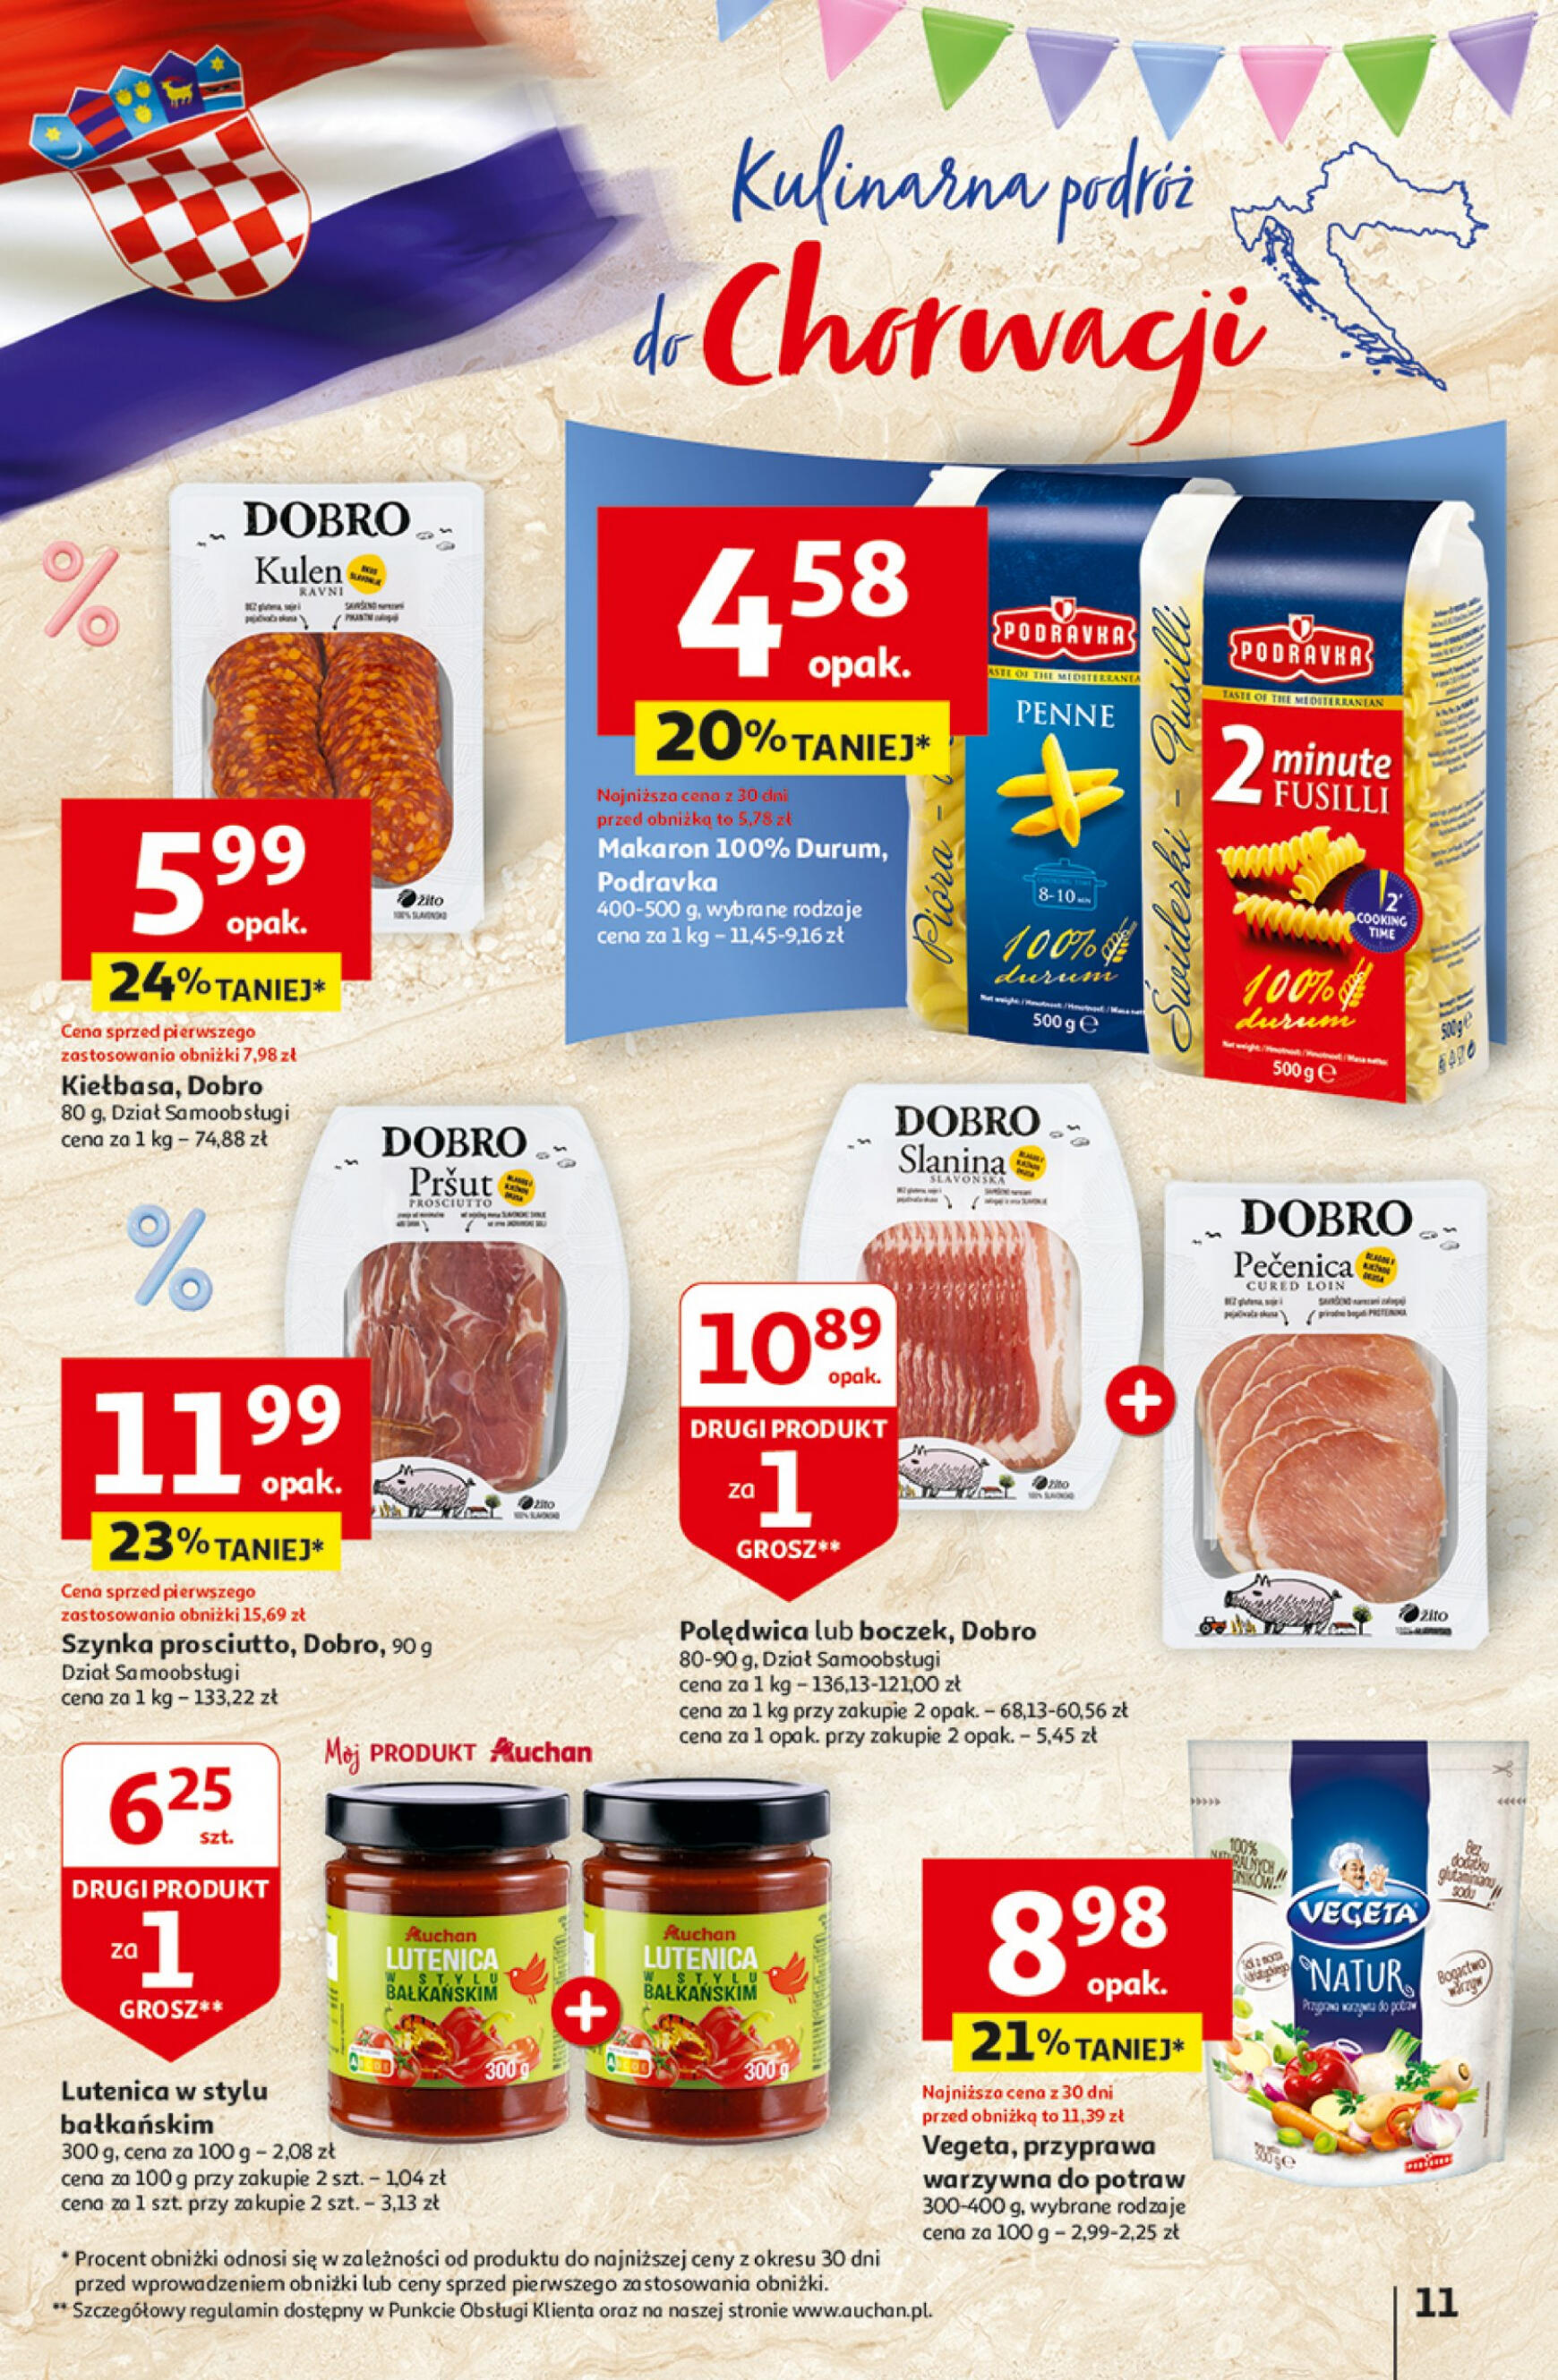 auchan - Hipermarket Auchan - Gazetka Jeszcze taniej na urodziny gazetka aktualna ważna od 25.04. - 30.04. - page: 11